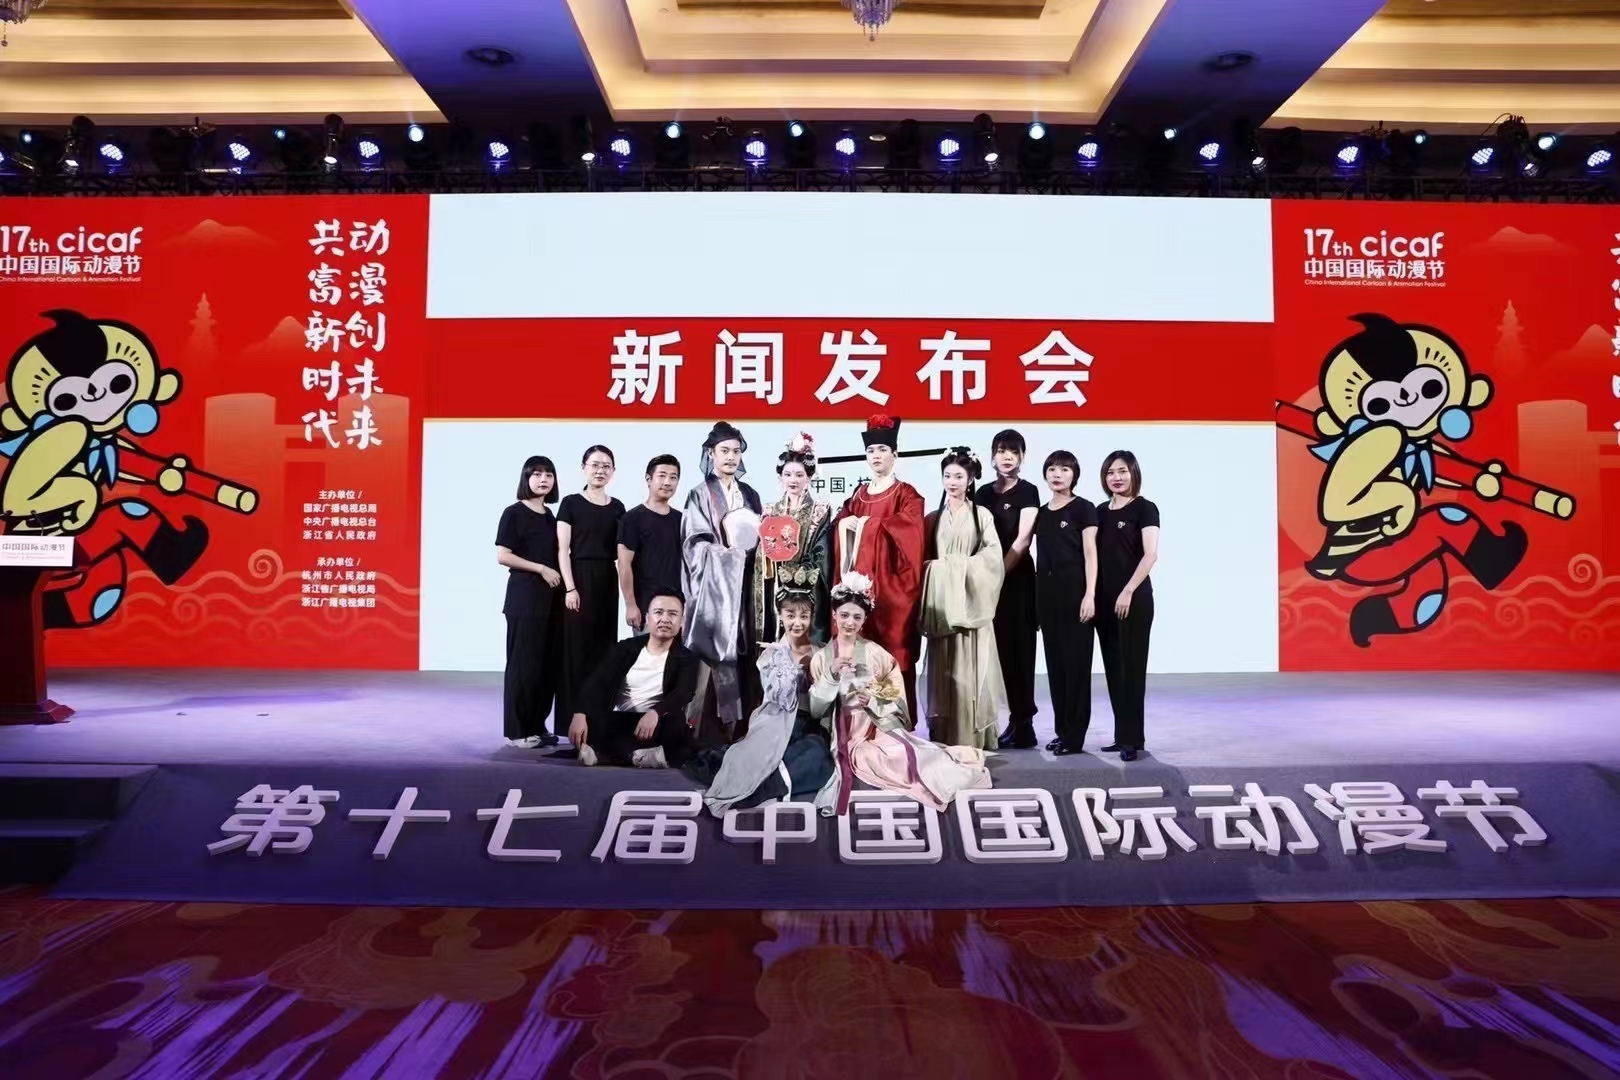 毛戈平助力第十七届杭州国际动漫节,展现传统文化艺术魅力